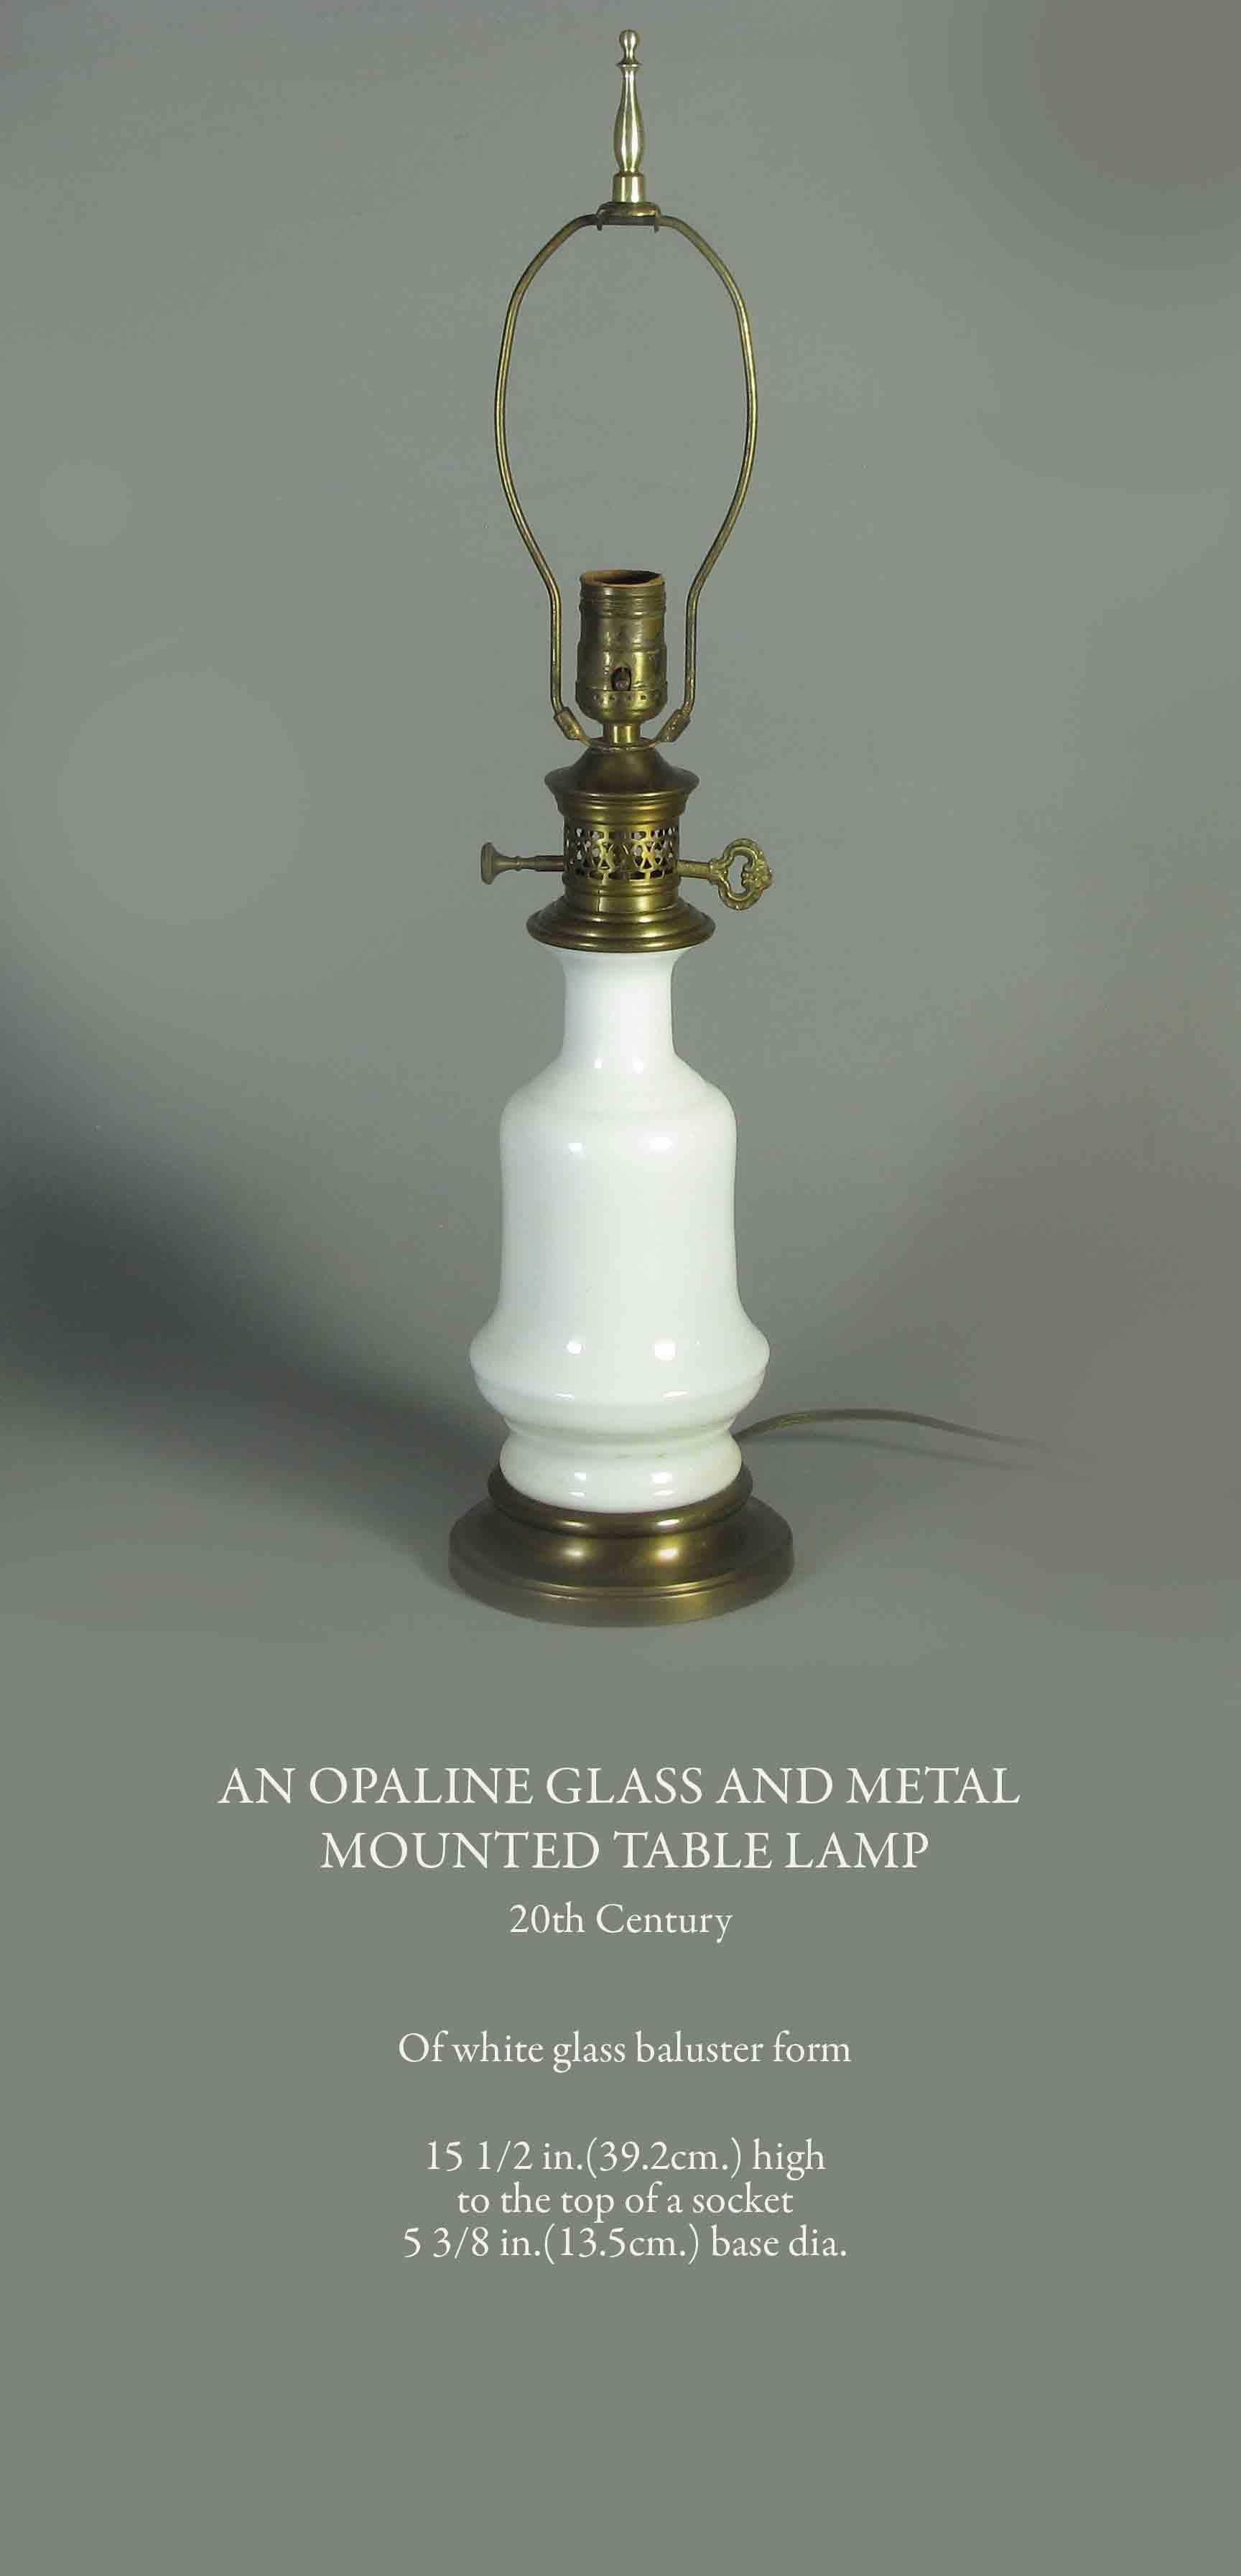 Un verre opalin et du métal
Lampe de table à poser ou suspendre
20ème siècle. 

De forme de balustre en verre blanc.

38,2 cm de haut
jusqu'au sommet d'une douille
Diamètre de la base de 13,5 cm (5 3/8 po.).